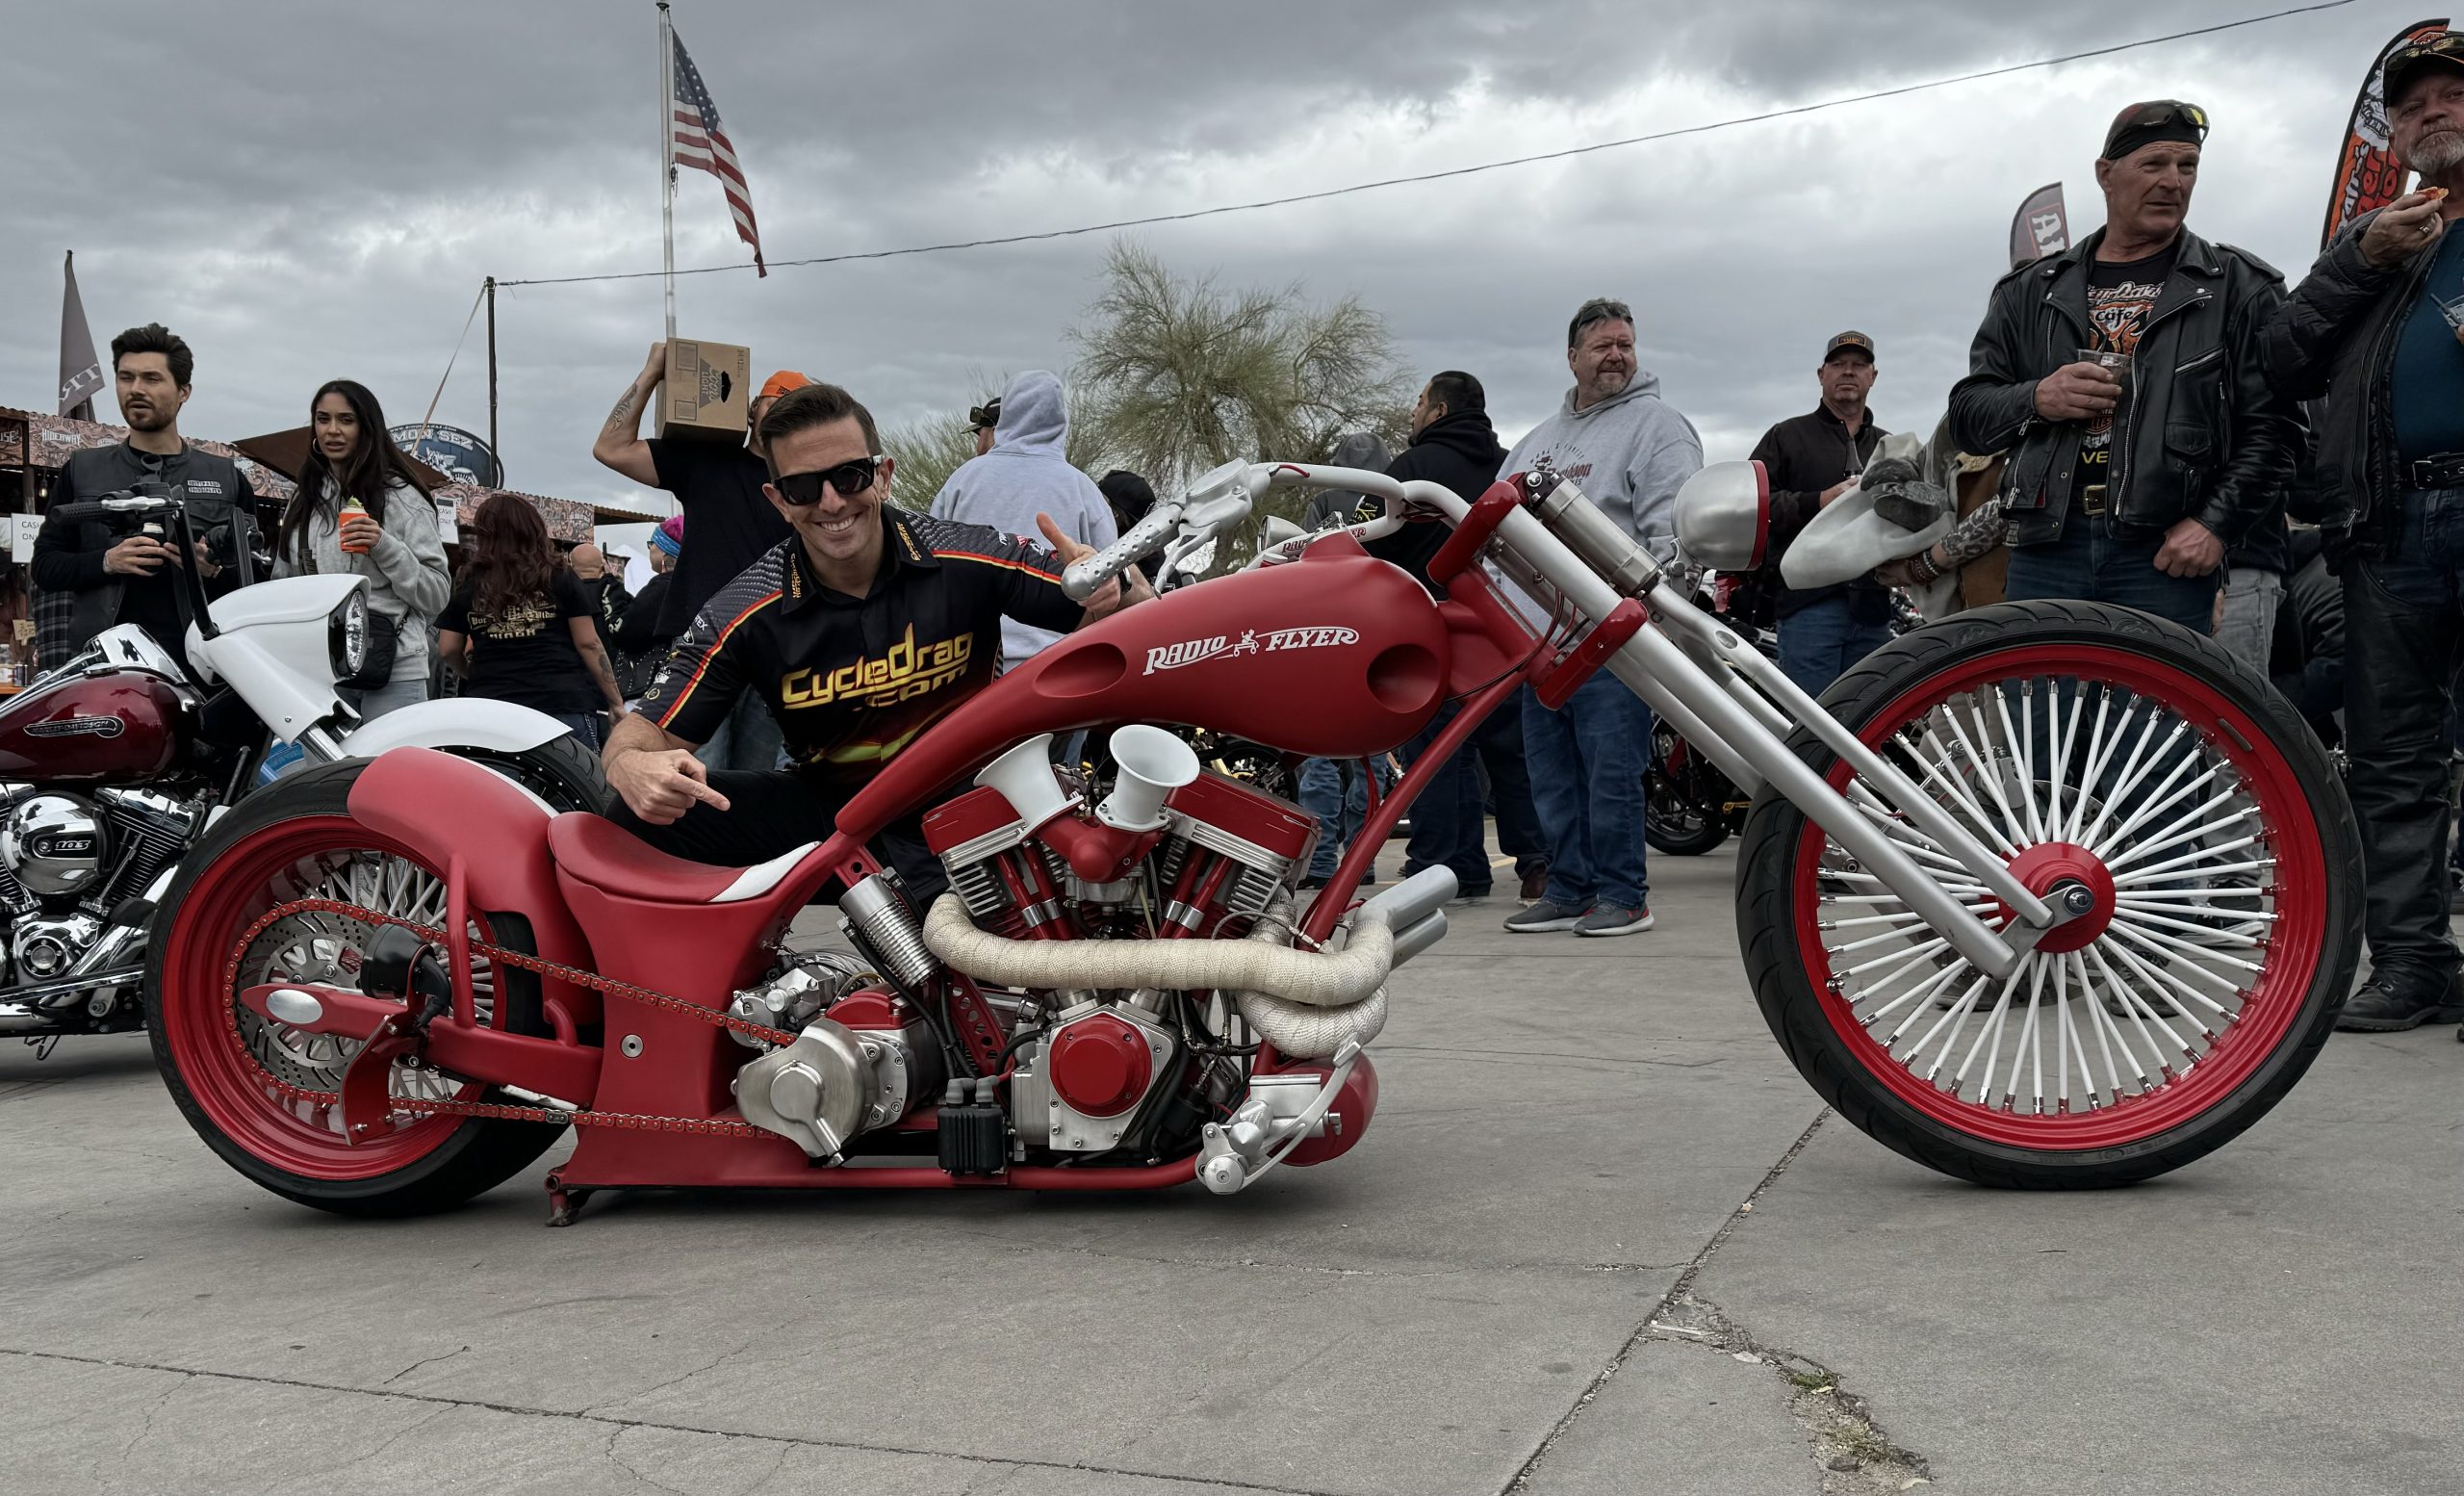 Jack Korpela, Arizona Bike Week